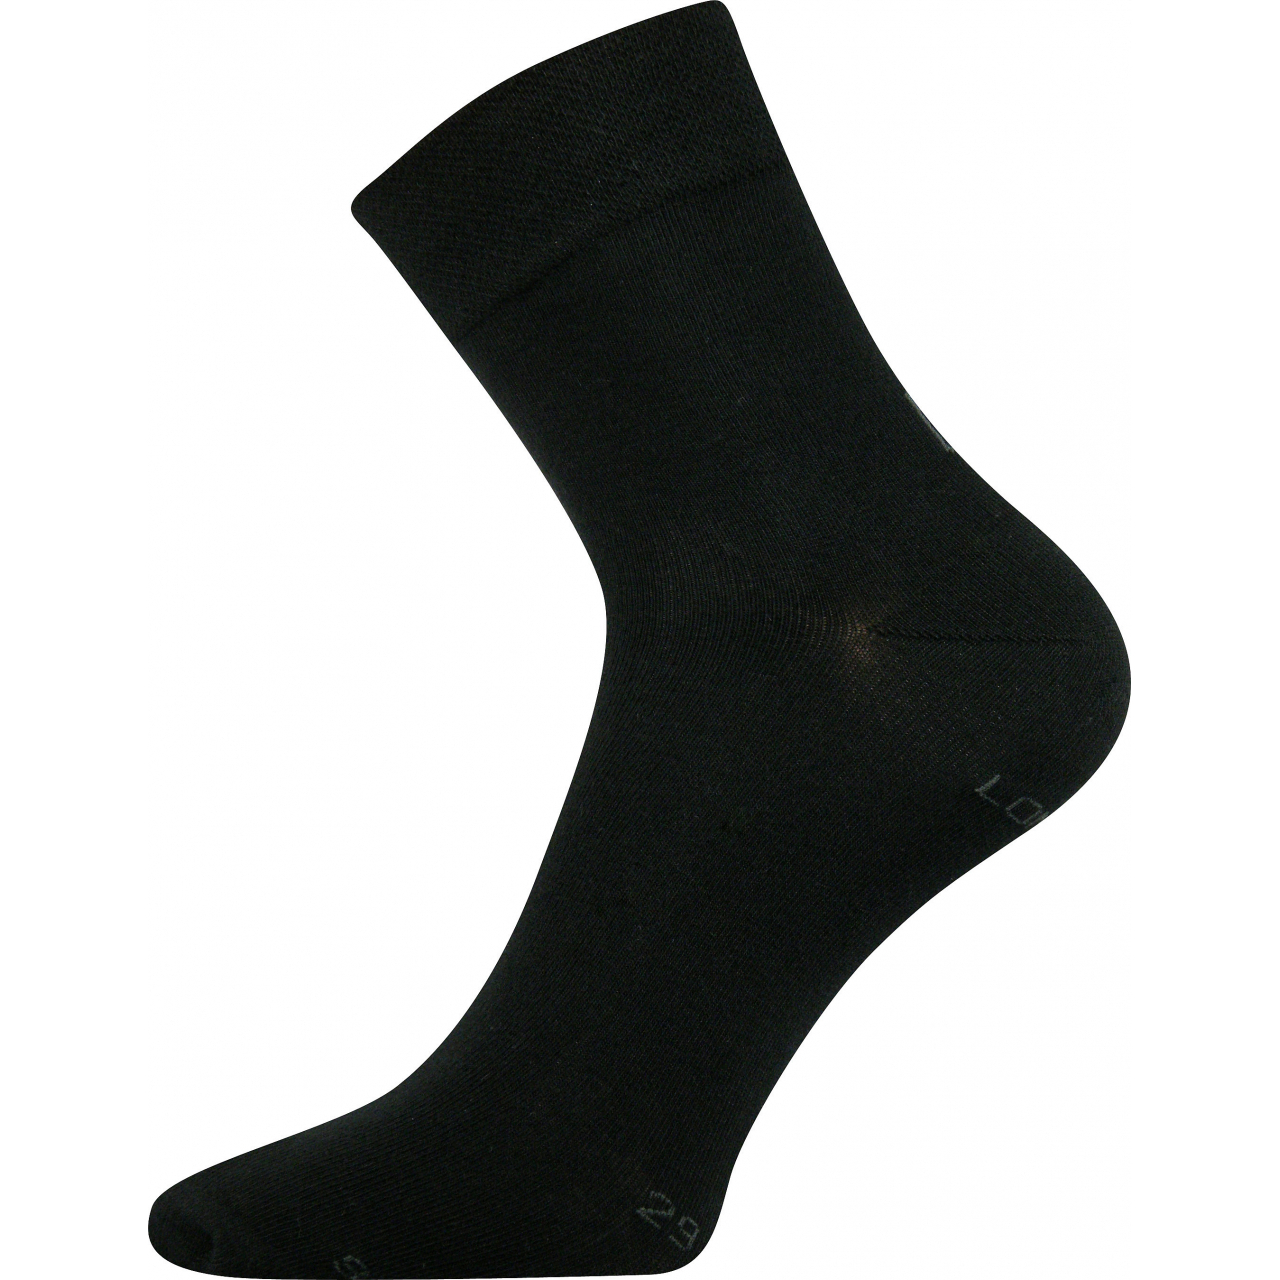 Ponožky dámské Lonka Fanera - černé, 39-42